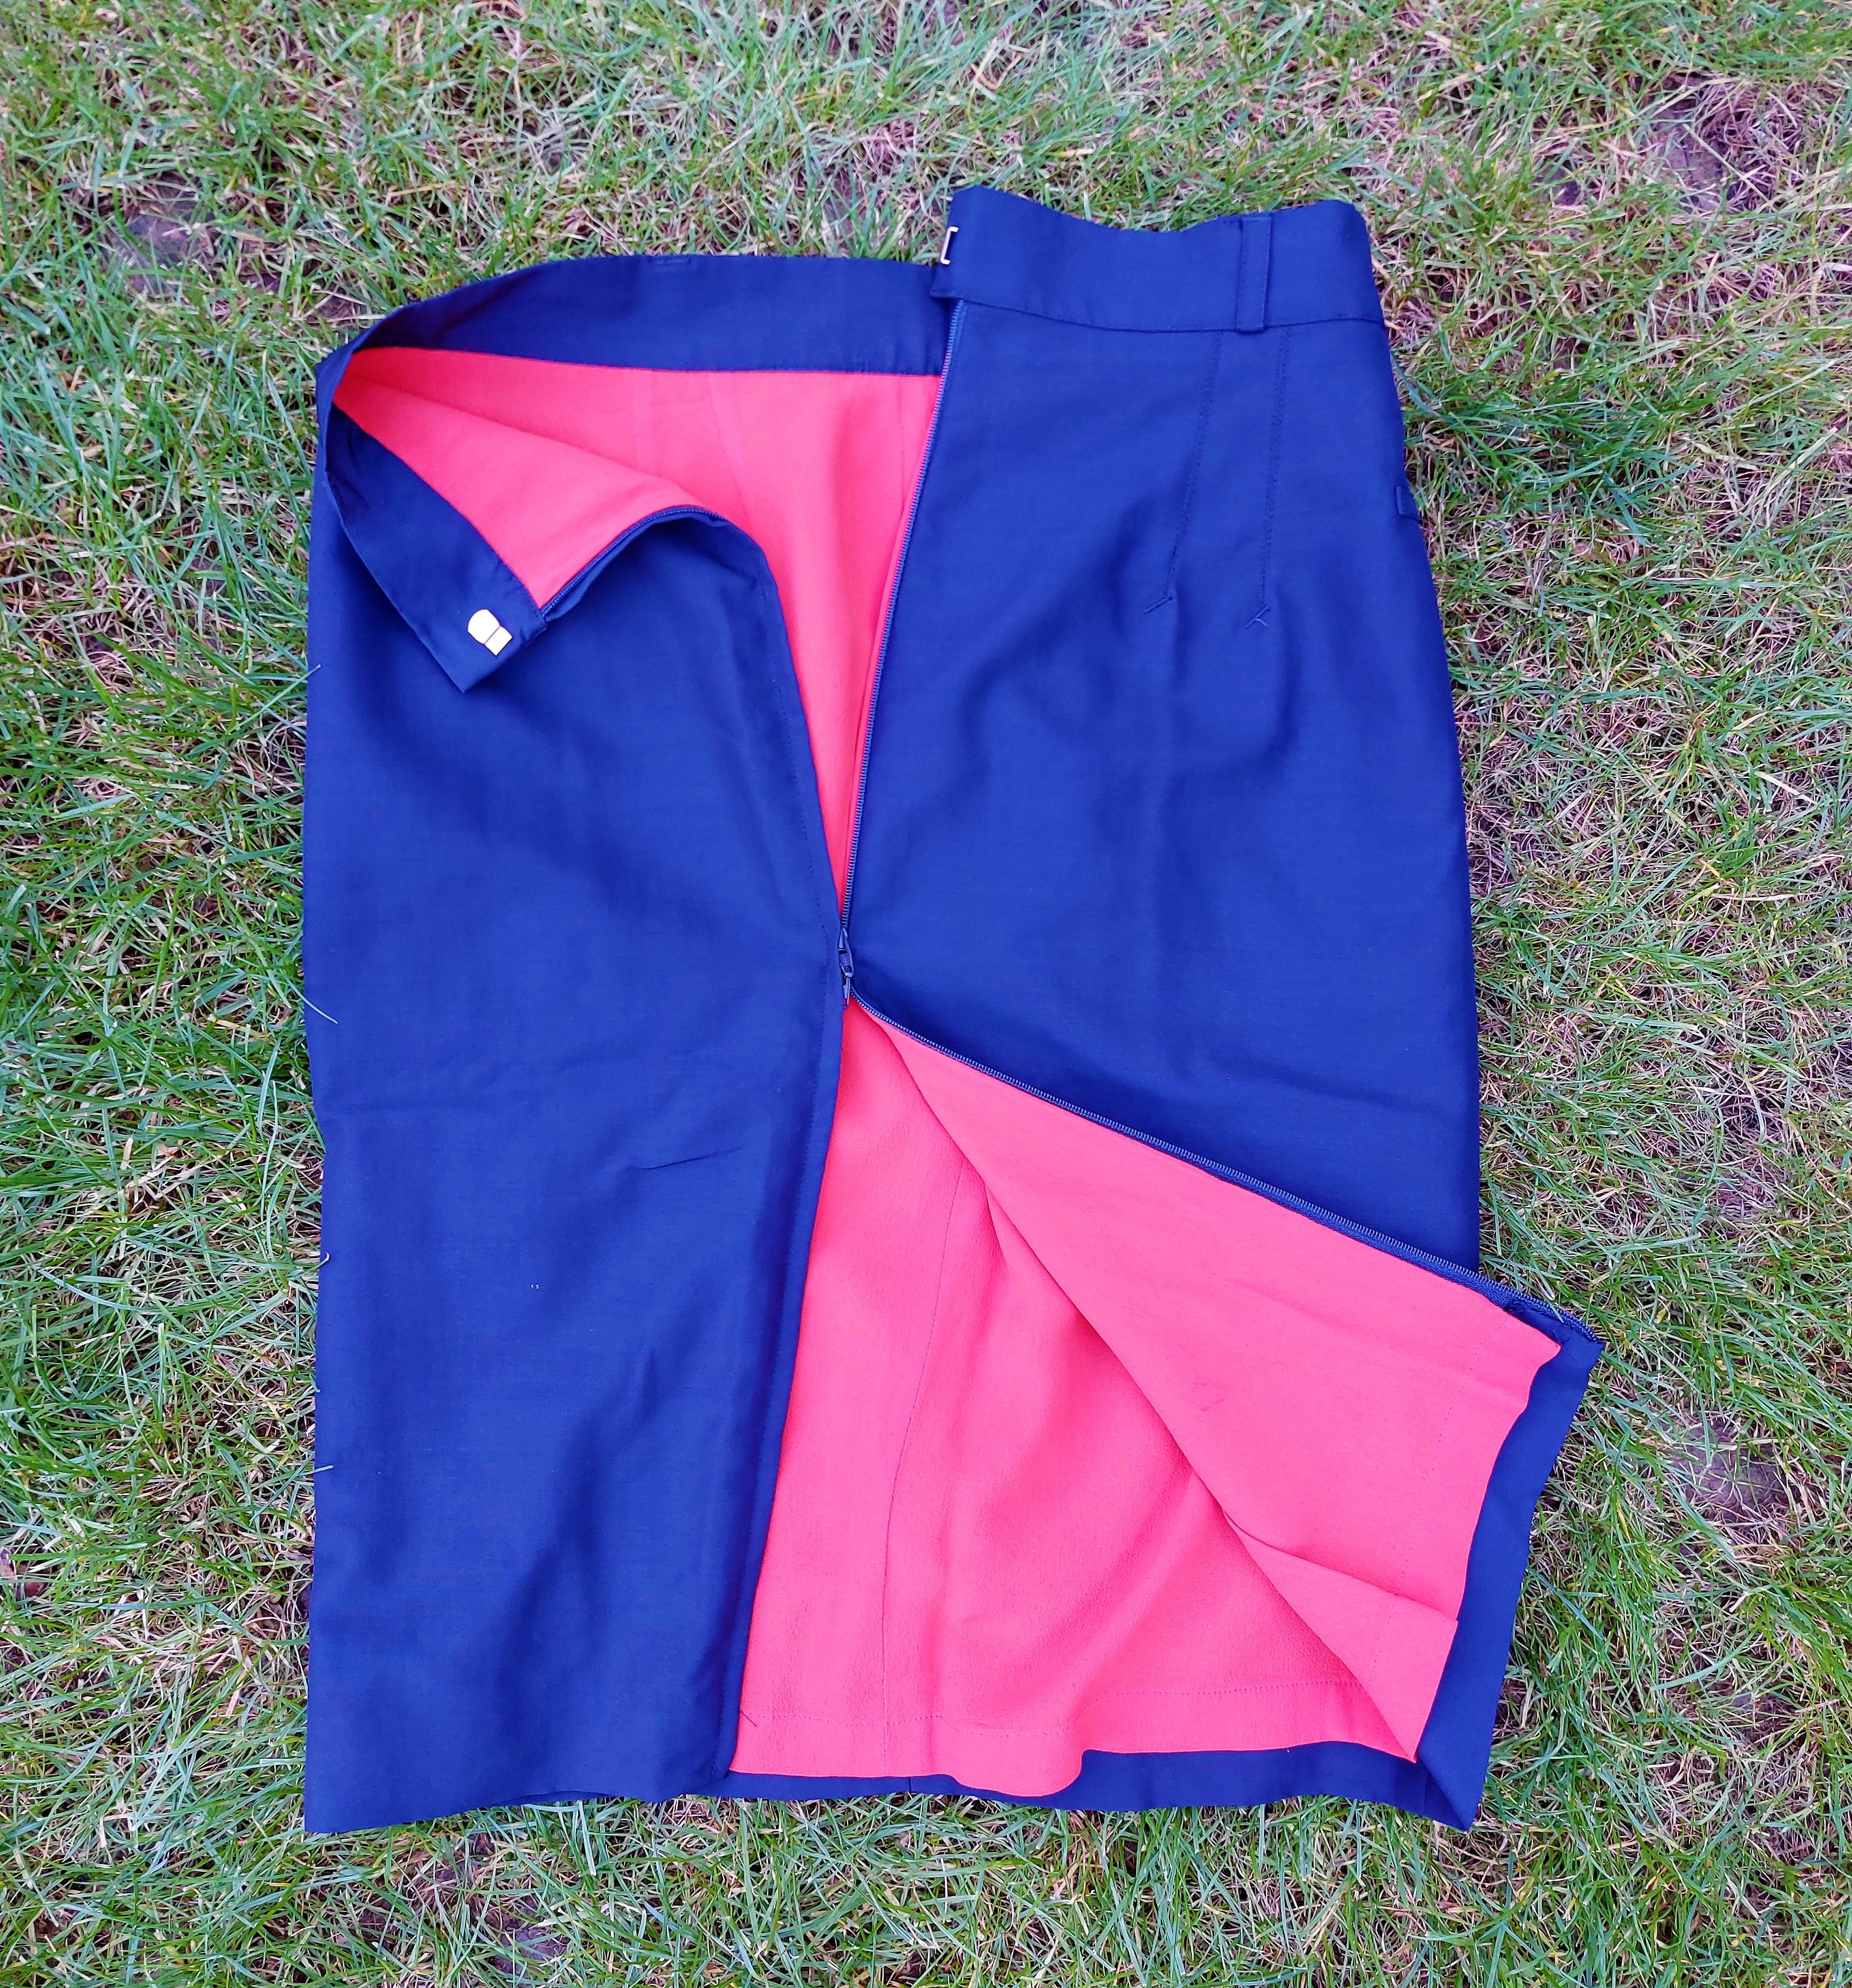 Jean Paul Gaultier Classique Bleu Marine Orange Blazer Formal Elegant Vintage 90's 1990 Rare Iconic Jacket Skirt Ensemble Set

Excellent état, pièce rare !
Taille XS/S, la taille du modèle est XS sur les photos.
Mesures :
Une jupe :

Taille : 34 cm